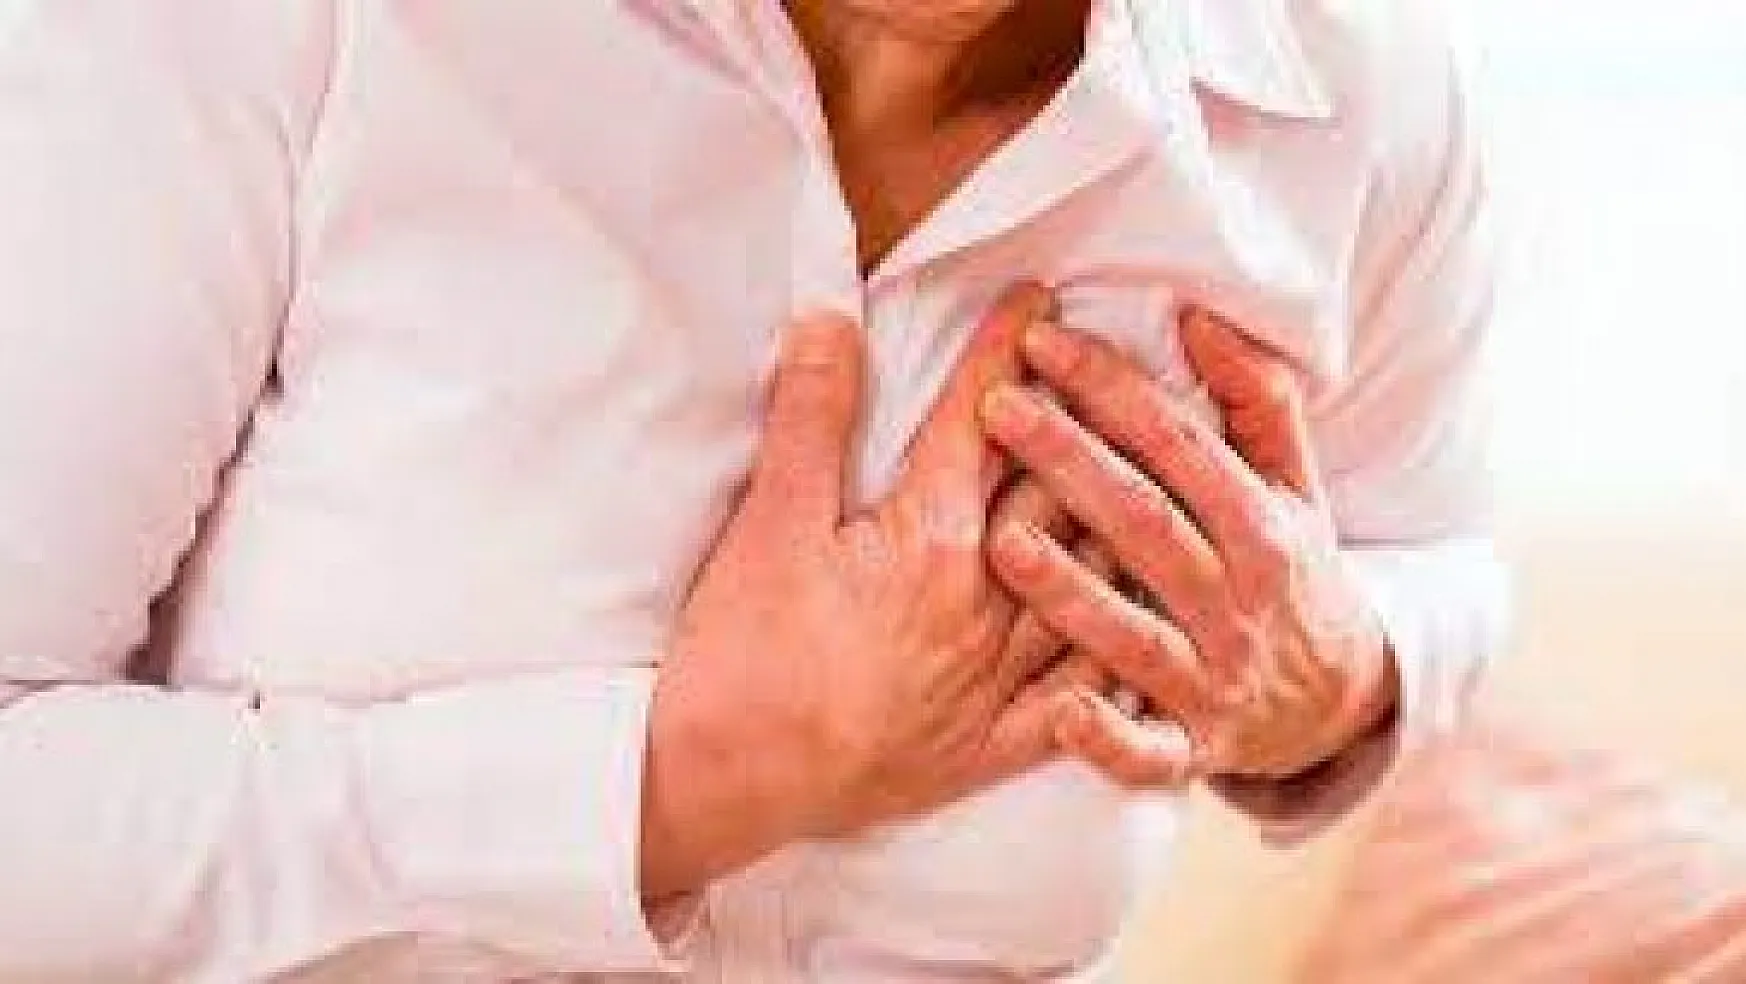 Kalp hastaları hem Covid hem influenza açısından yüksek risk altında